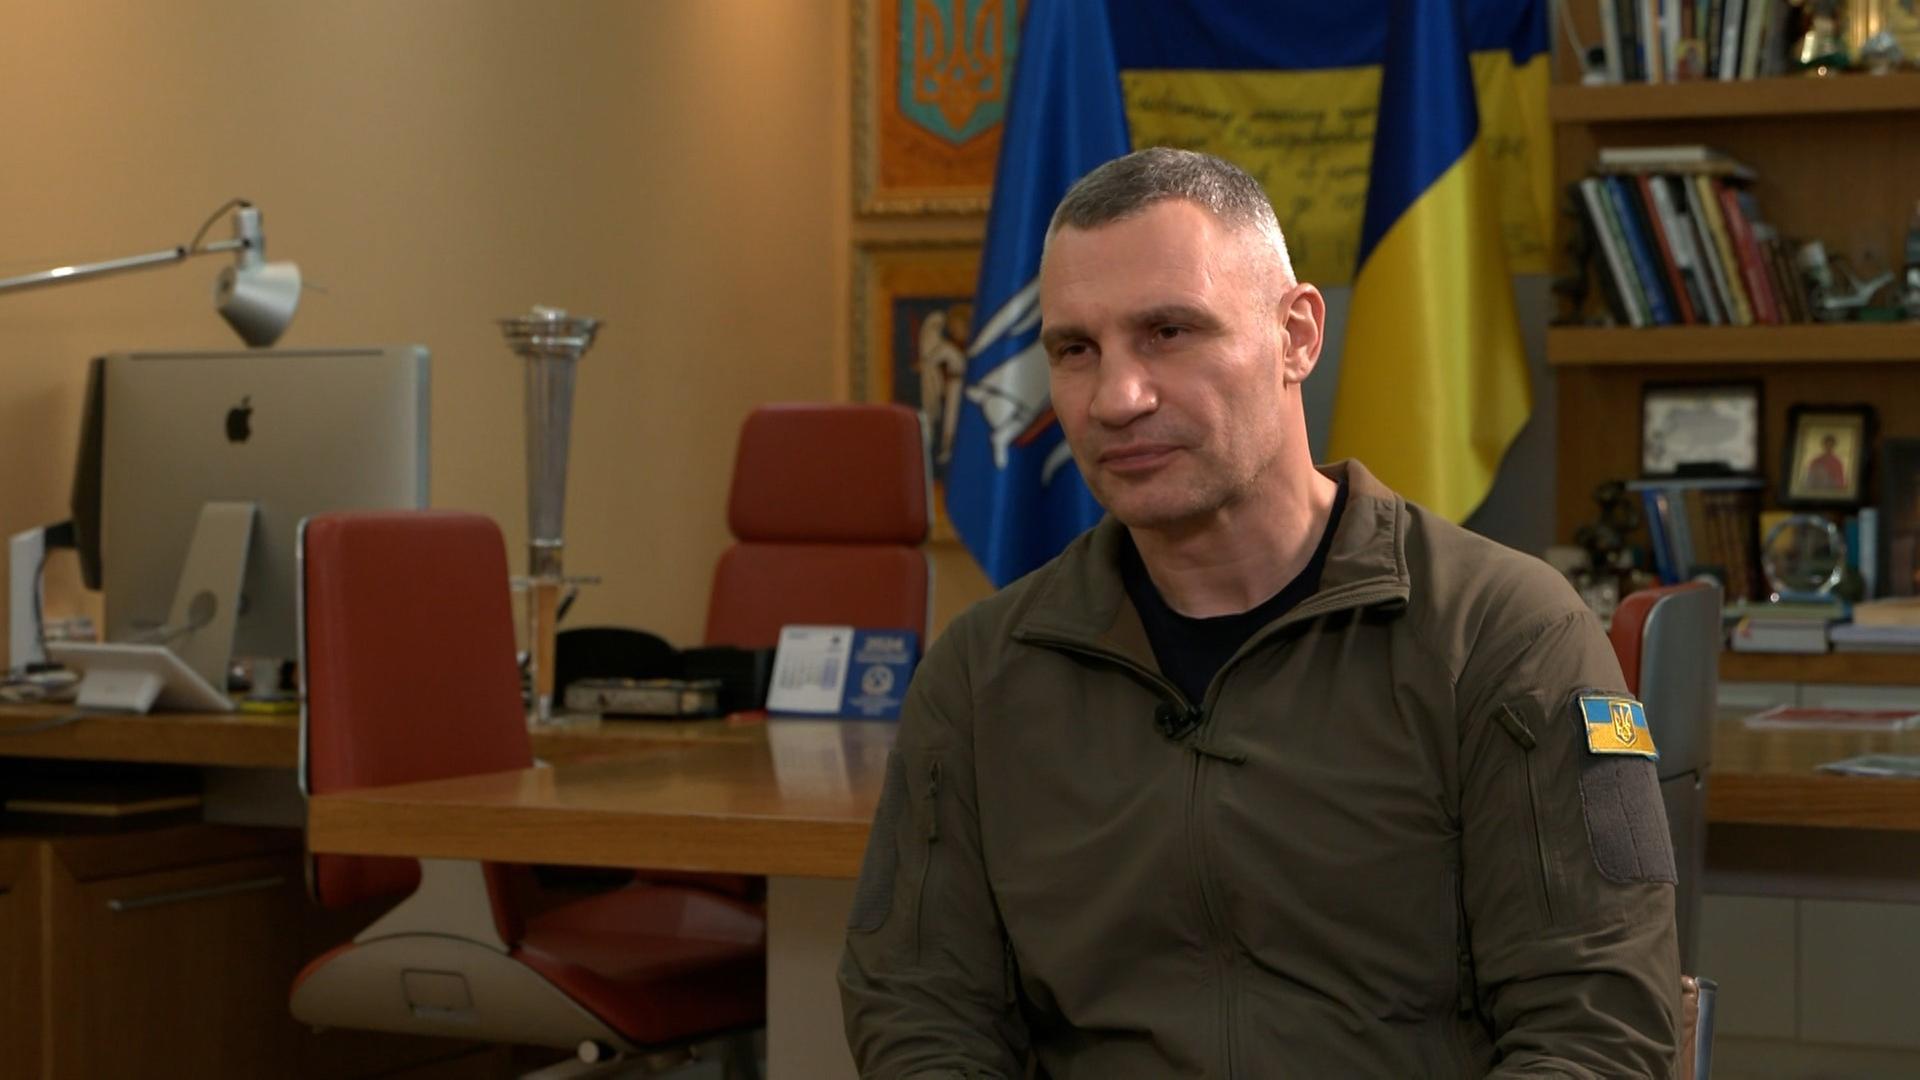 Kiews Bürgermeister Vitali Klitschko in seinem Büro während eines Interviews mit Katrin Eigendorf